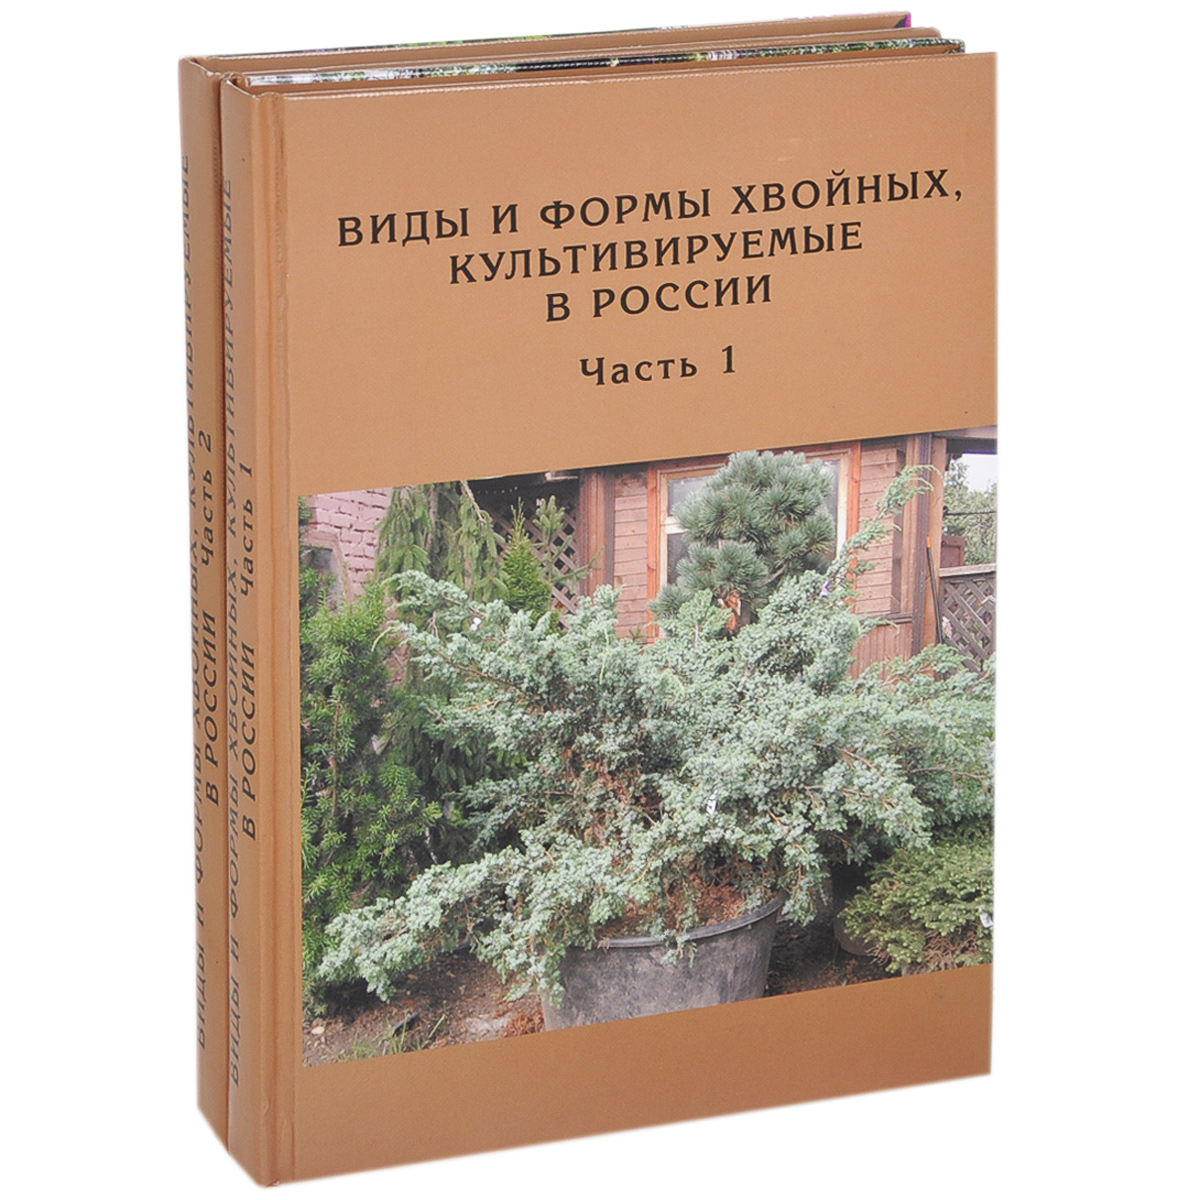 Виды и формы хвойных, культивируемые в России (комплект из 2 книг)